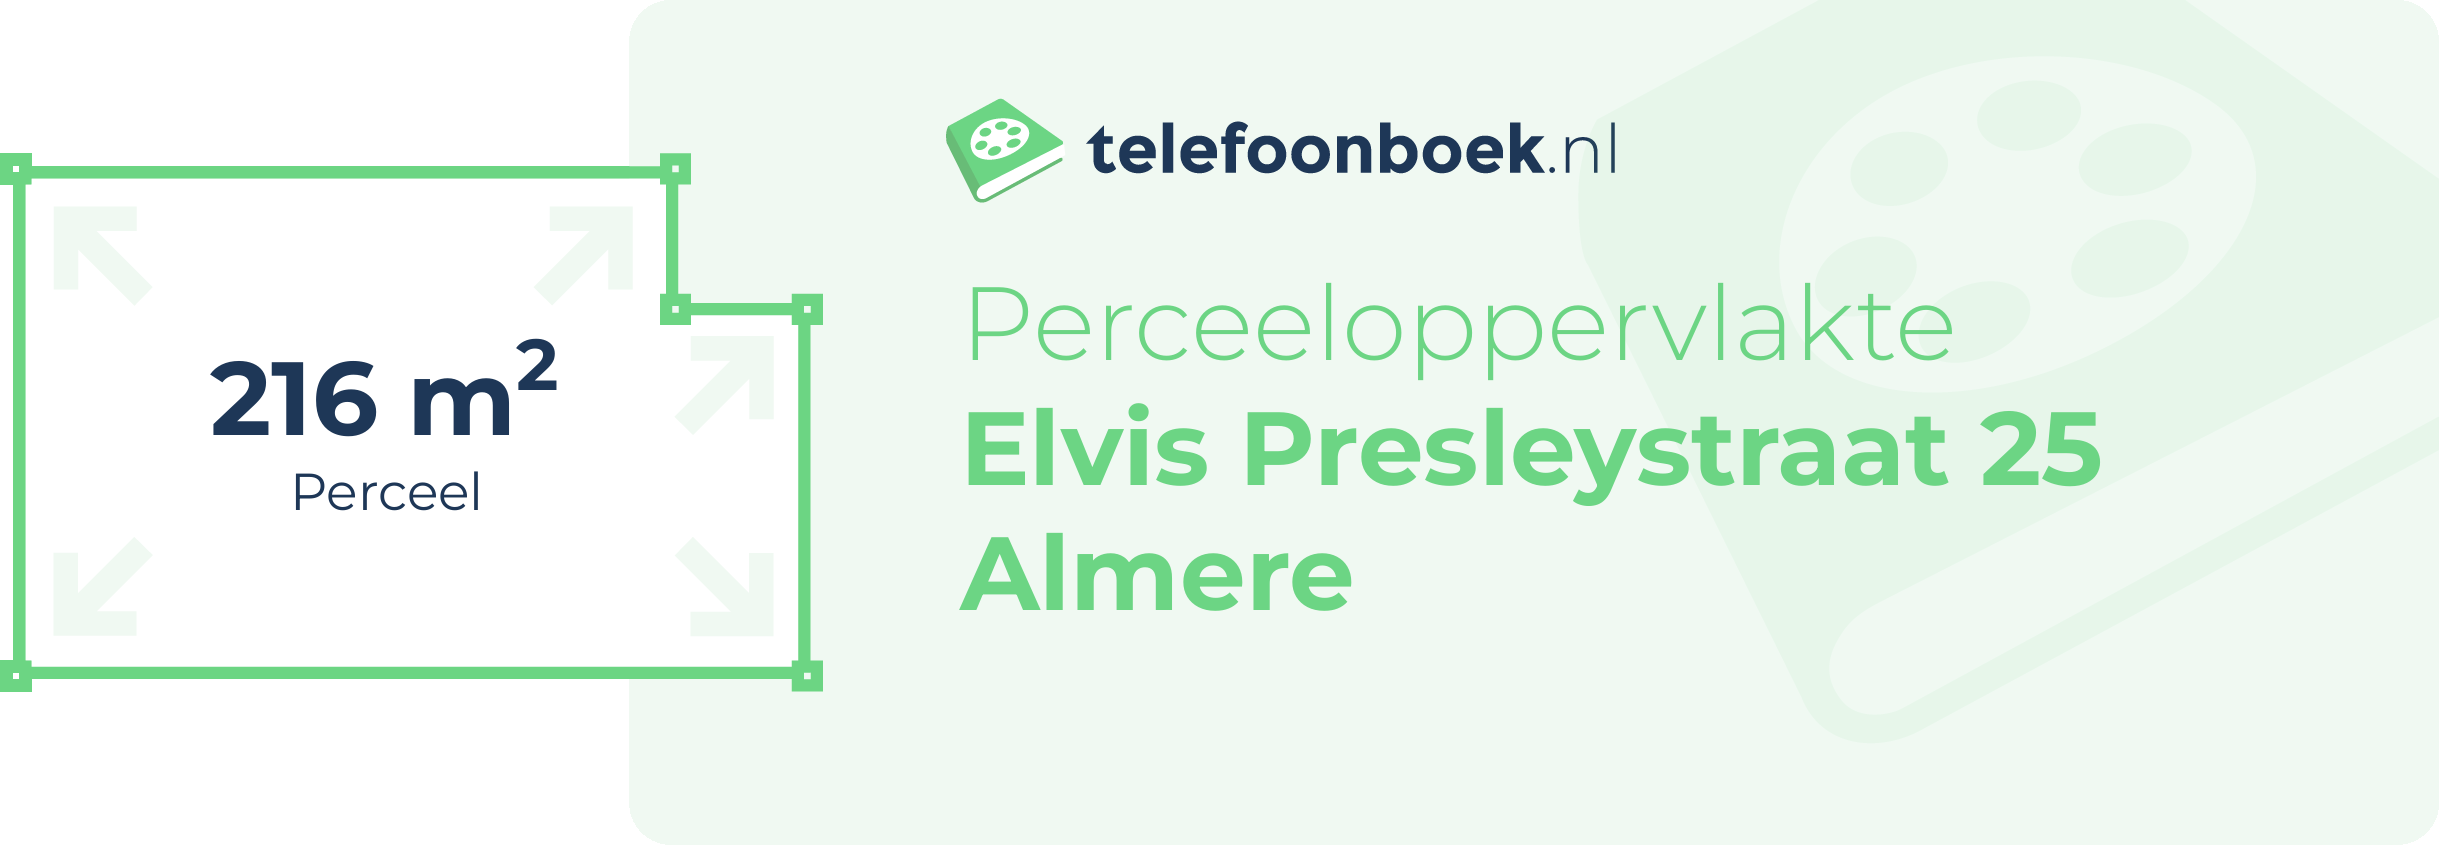 Perceeloppervlakte Elvis Presleystraat 25 Almere